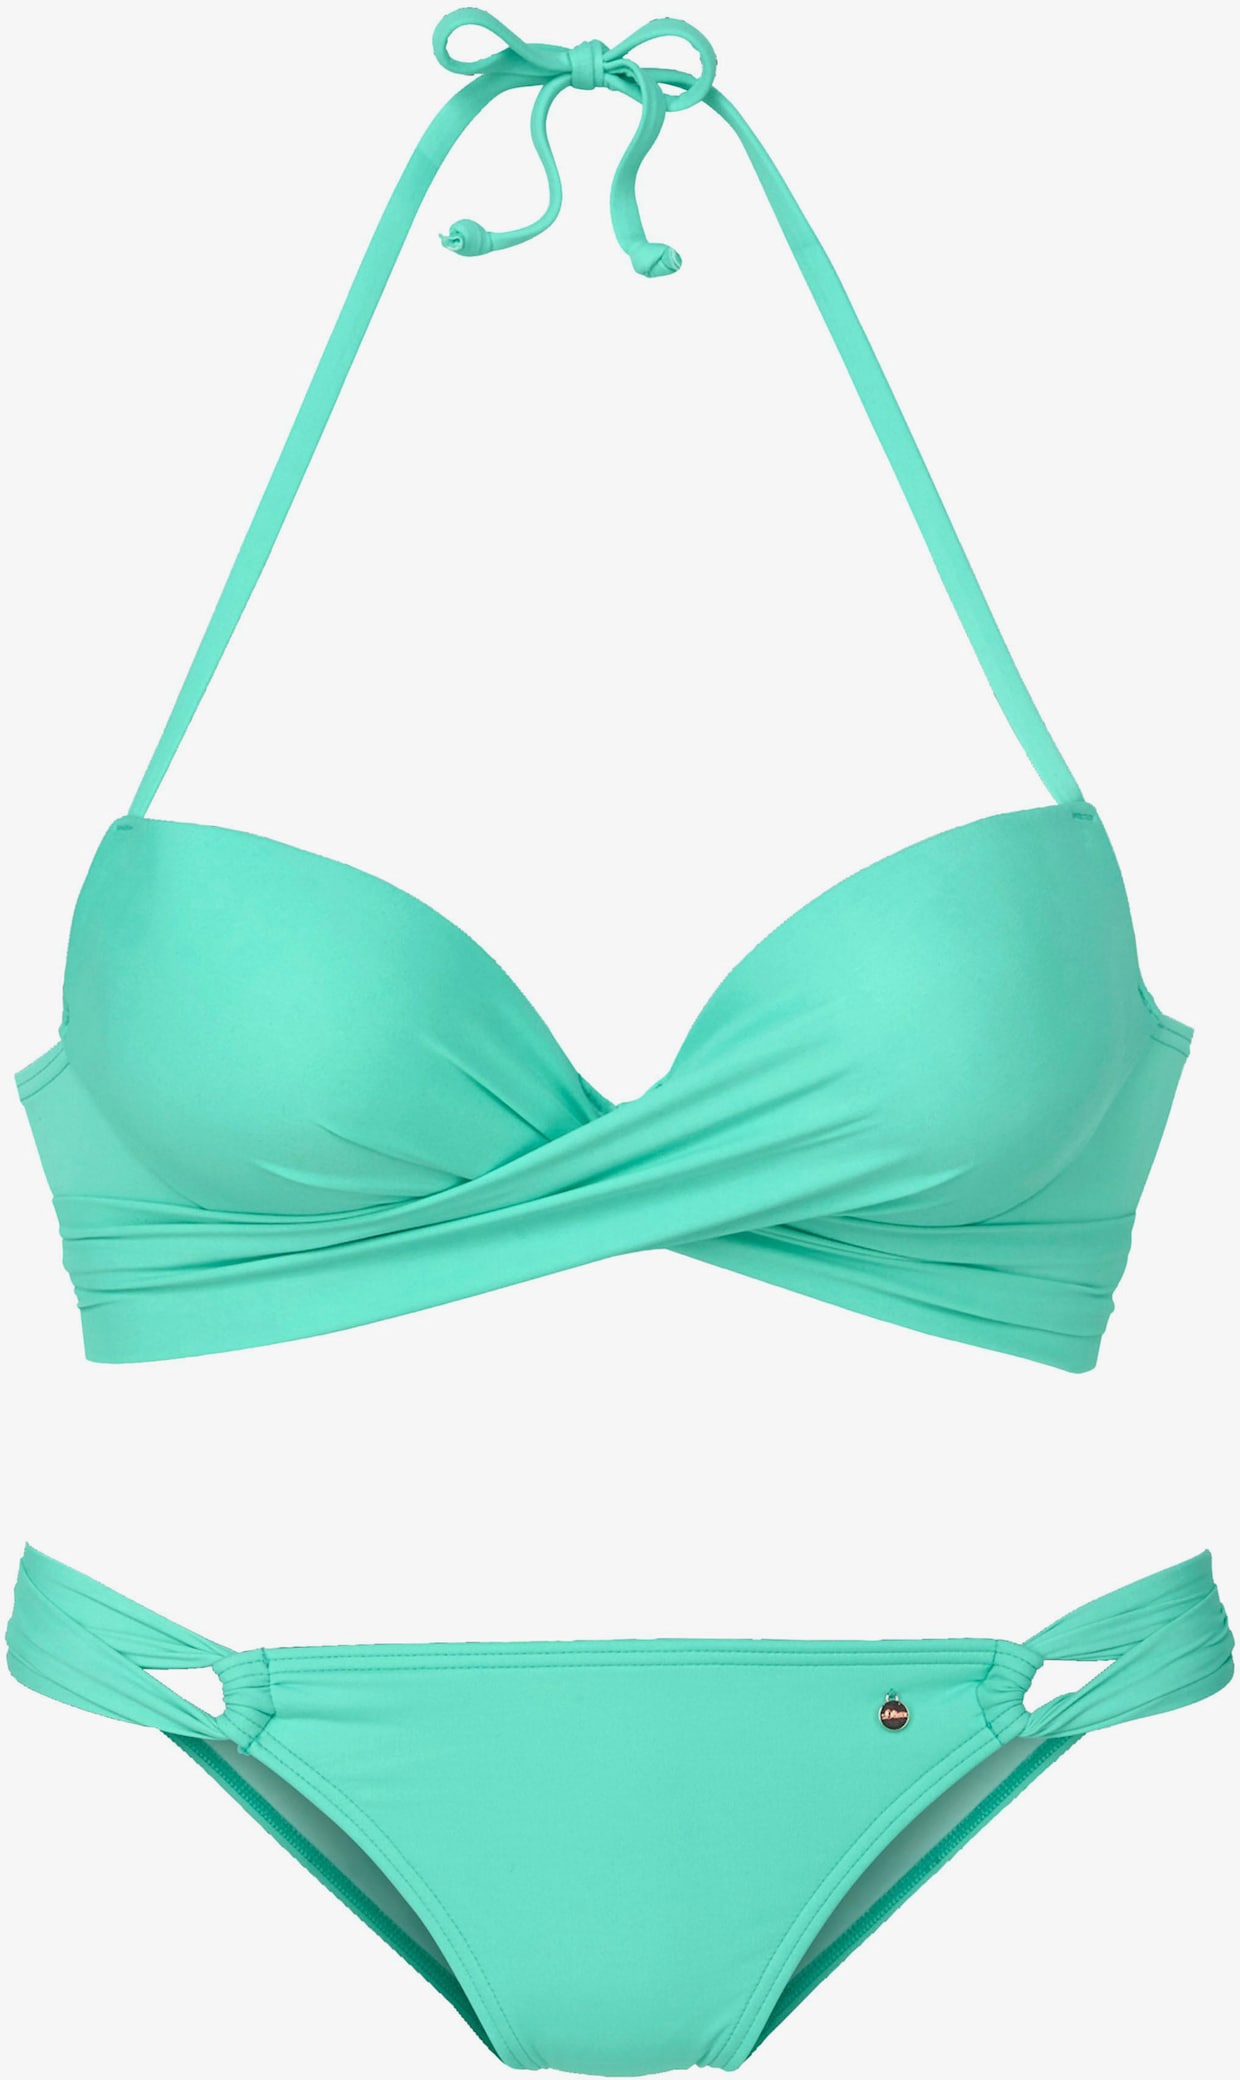 s.Oliver Bikini push-up - turquoise